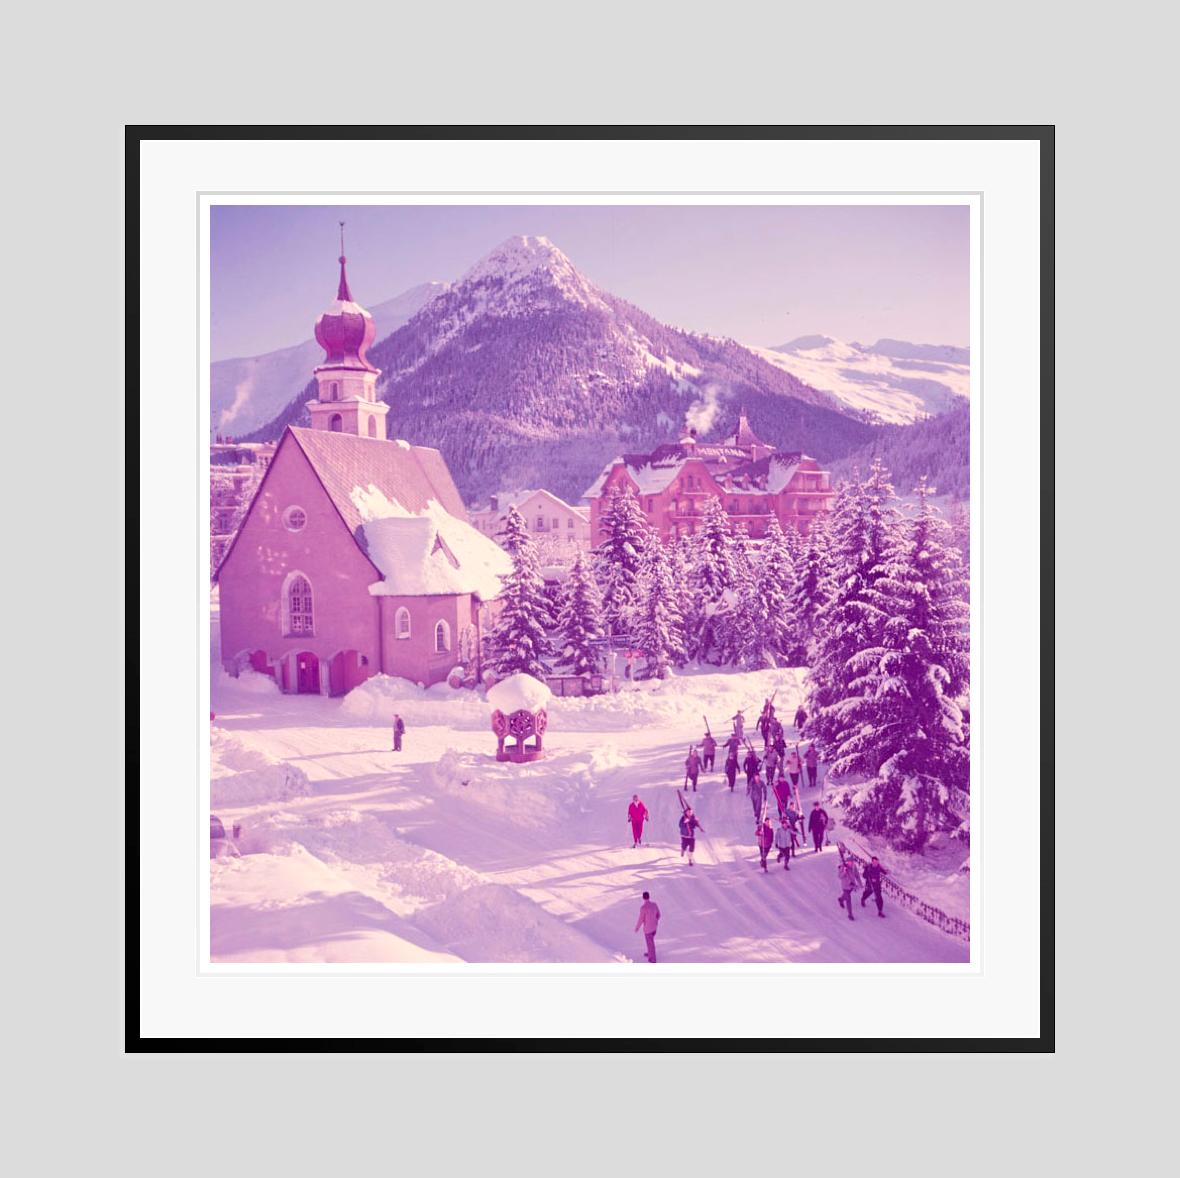 A Church's In The Snow

1951

Skifahrer gehen an einer verschneiten Kirche vorbei, Klosters, Schweiz, 1951

von Toni Frissell

30x30 Zoll / 76 x 76 cm Papierformat 
Archivierungs-Pigmentdruck
ungerahmt 
(Einrahmung möglich - siehe Beispiele - bitte